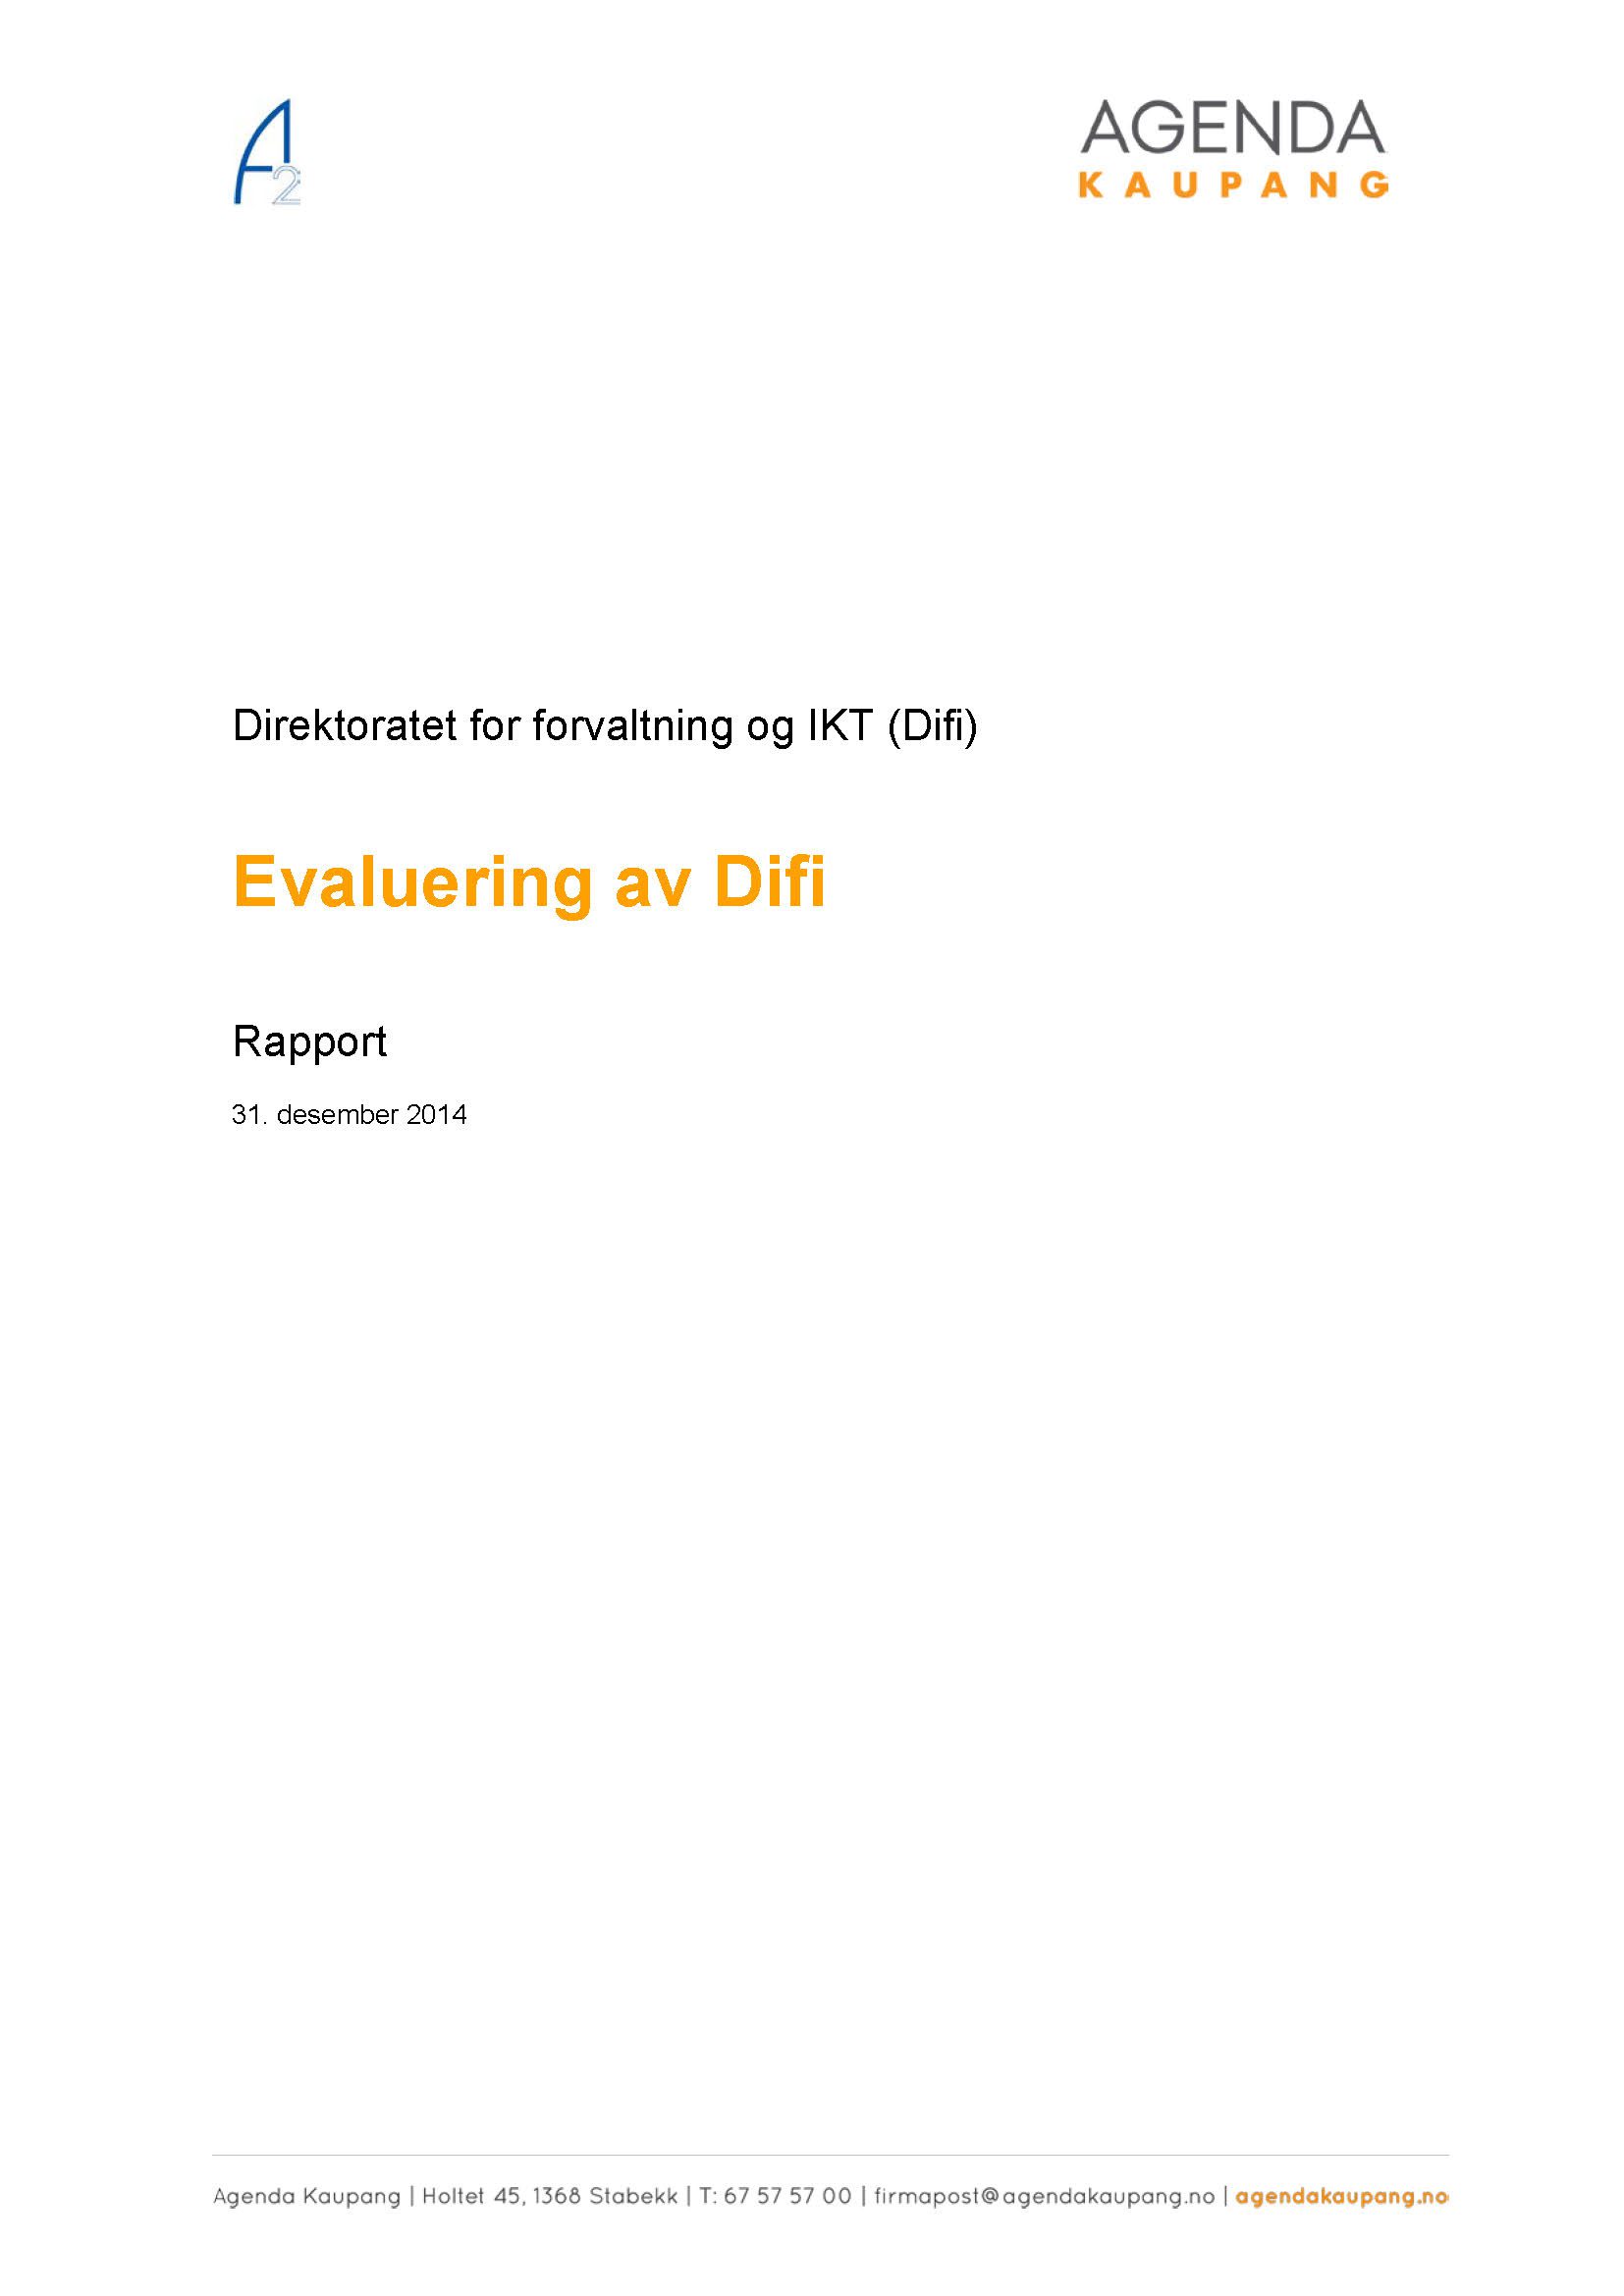 Evaluering av Direktoratet for forvaltning og IKT, Difi